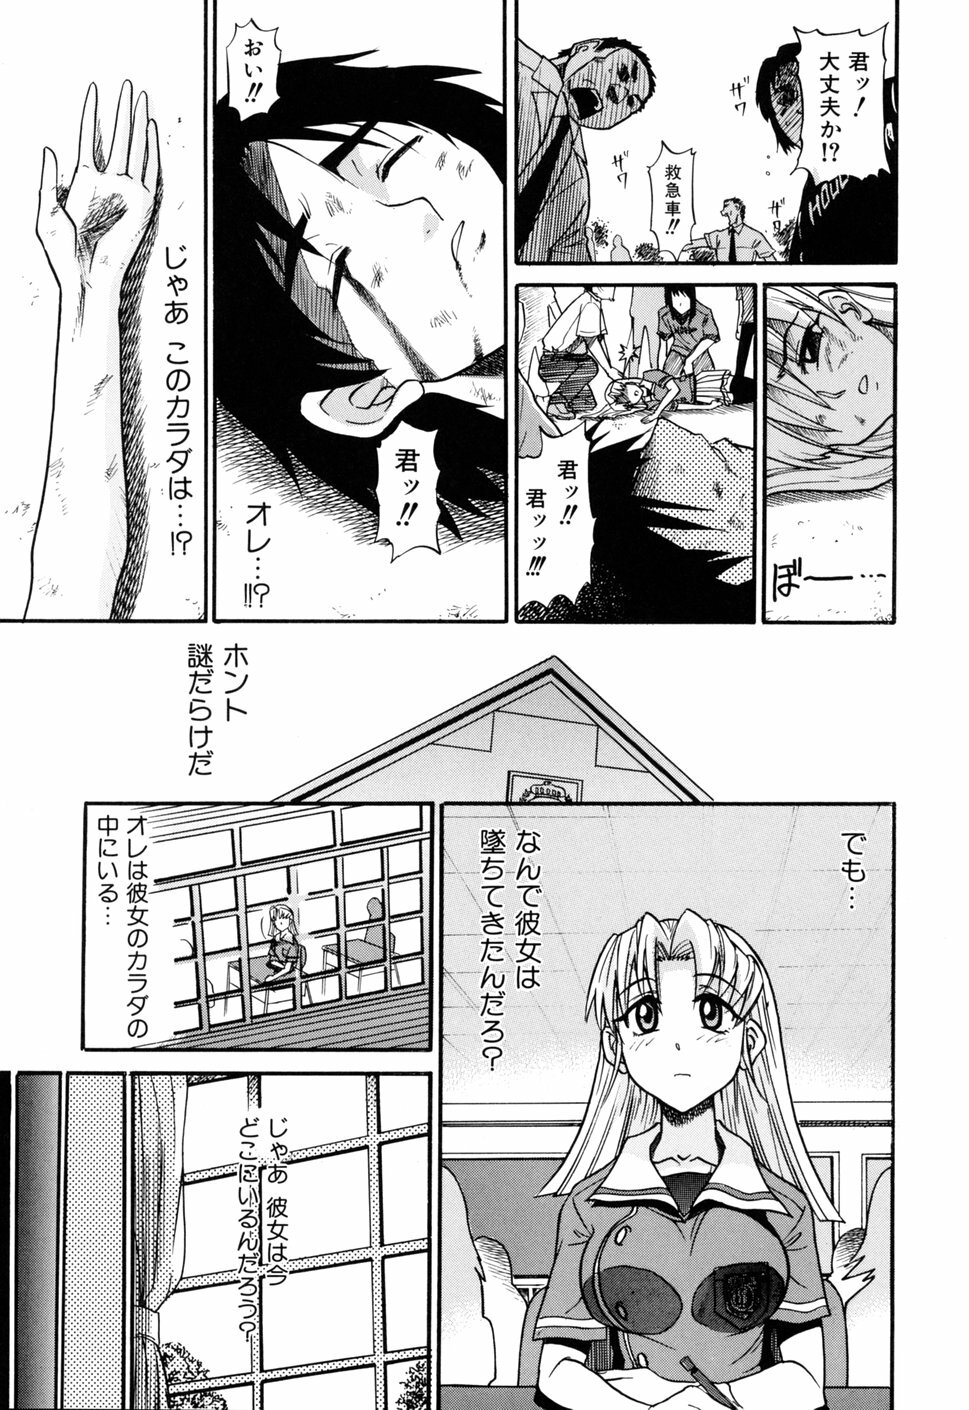 [DISTANCE] Ochiru Tenshi Vol. 1 page 13 full